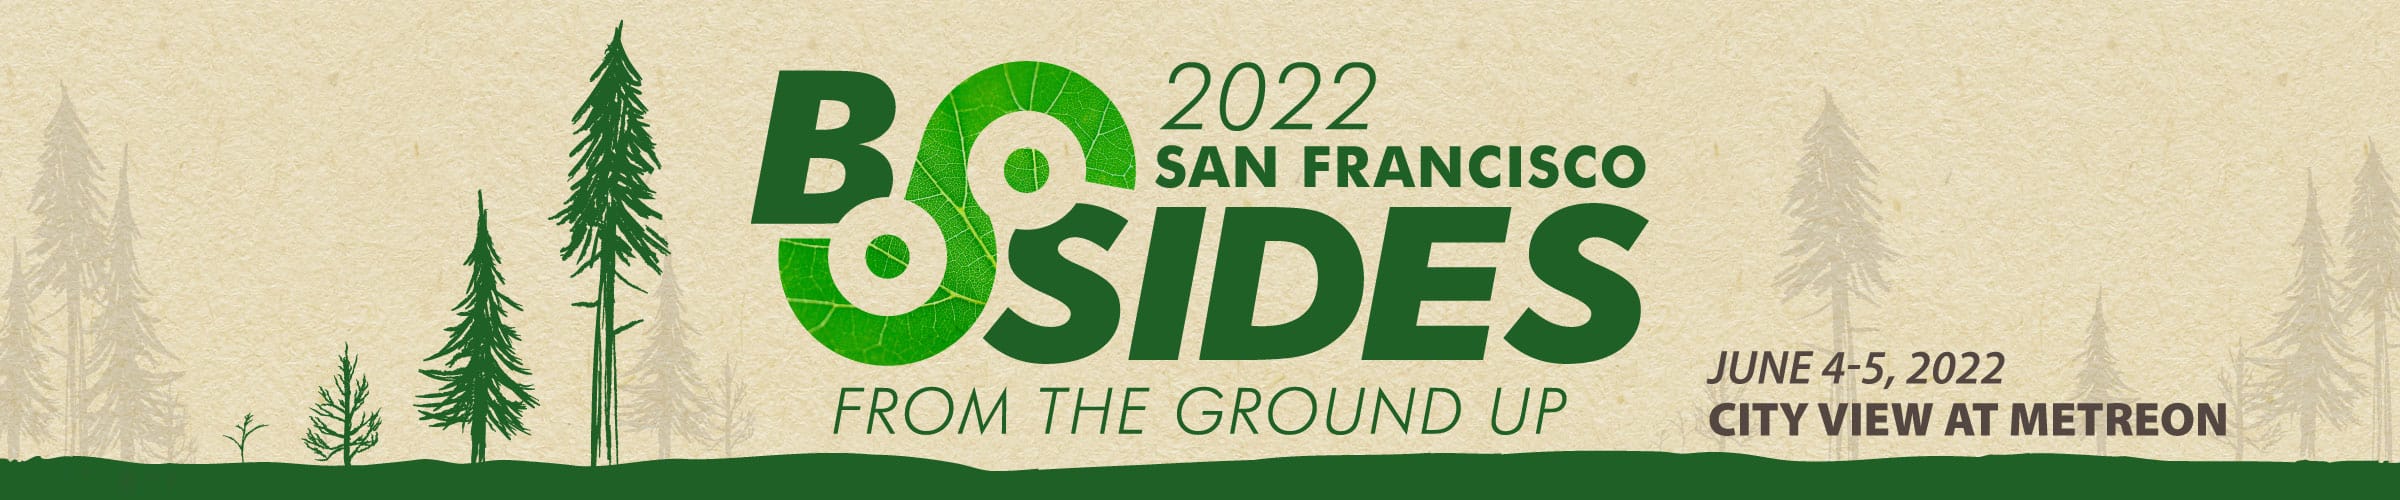 BSidesSF 2022 June 4-5